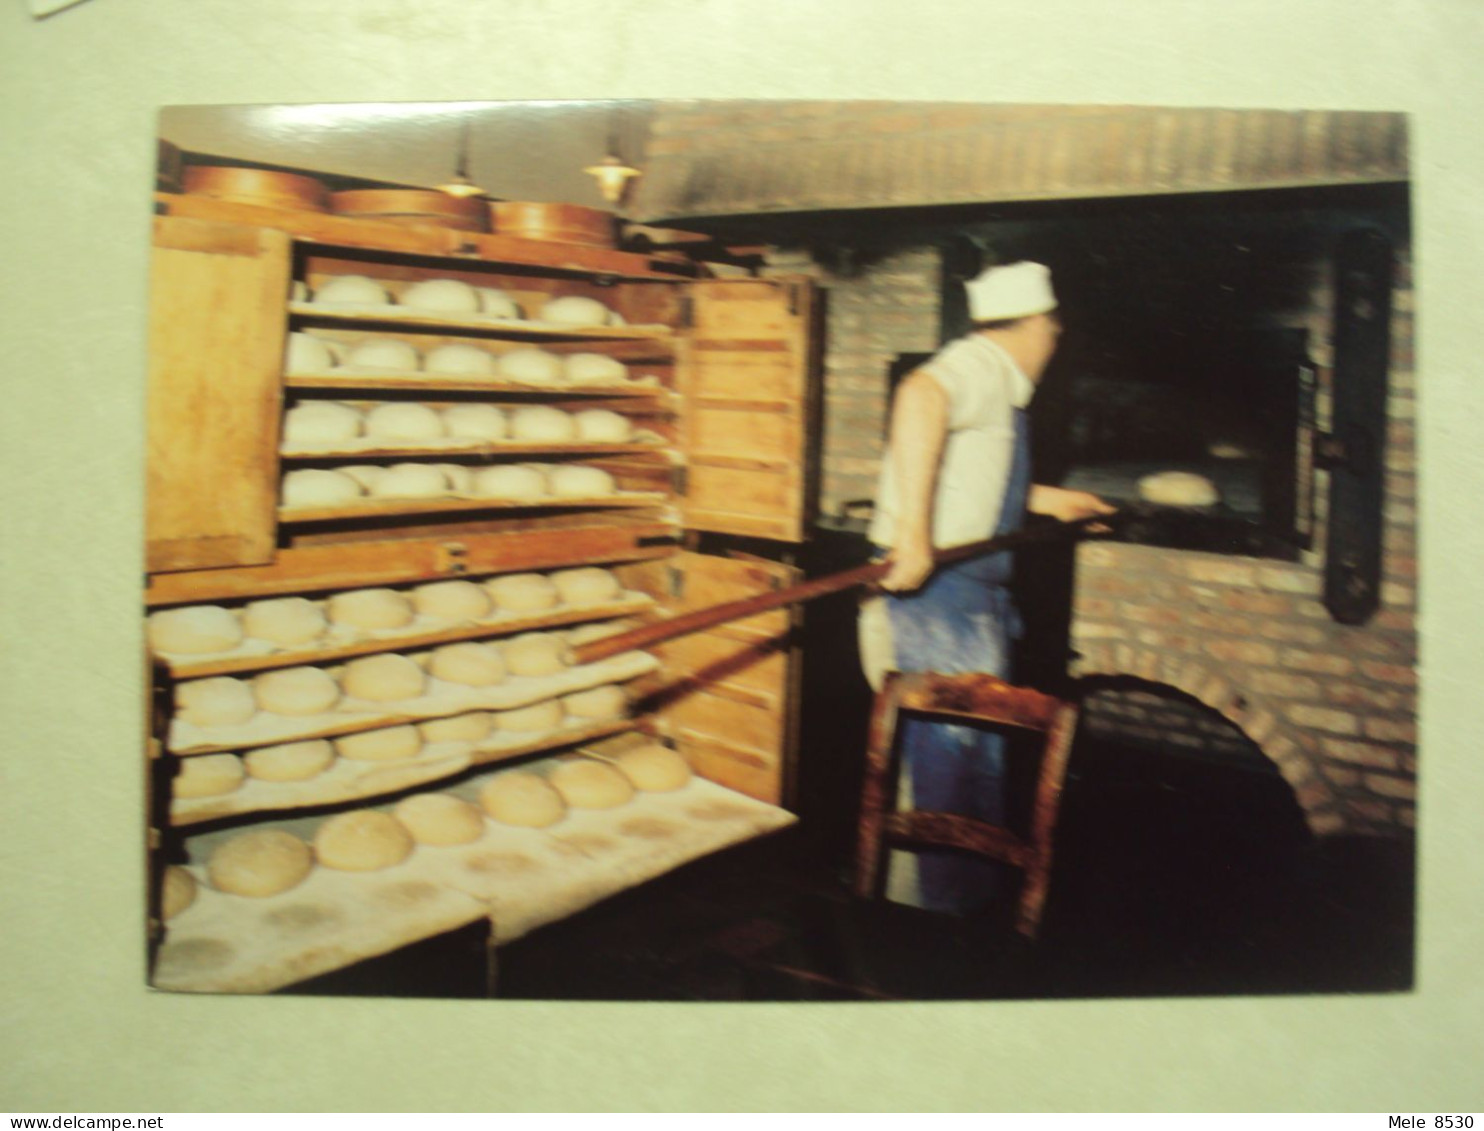 51315 - WILDERT - BAKKERSMOLEN ANNO 1981 - BROOD IN DE OVEN SCHIETEN - ZIE 2 FOTO'S - Essen